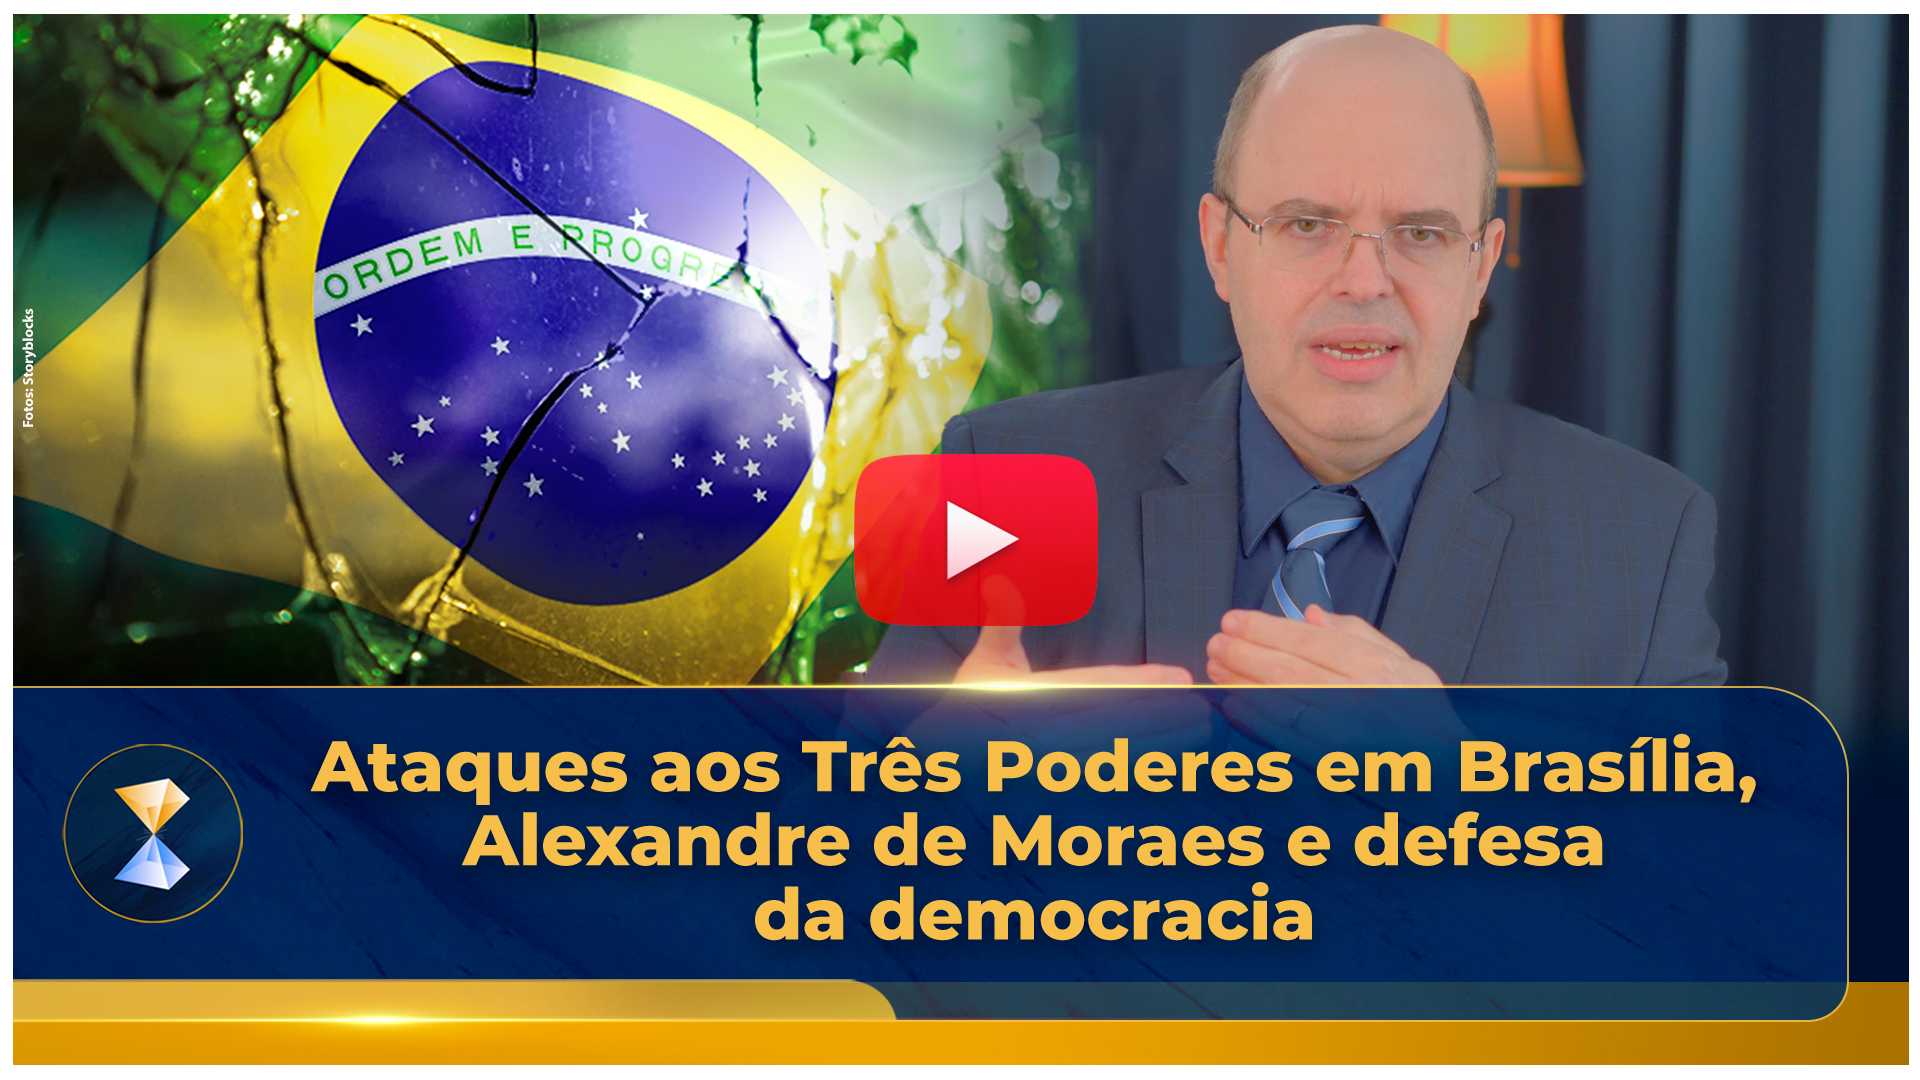 Ataques aos Três Poderes em Brasília, Alexandre de Moraes e defesa da democracia